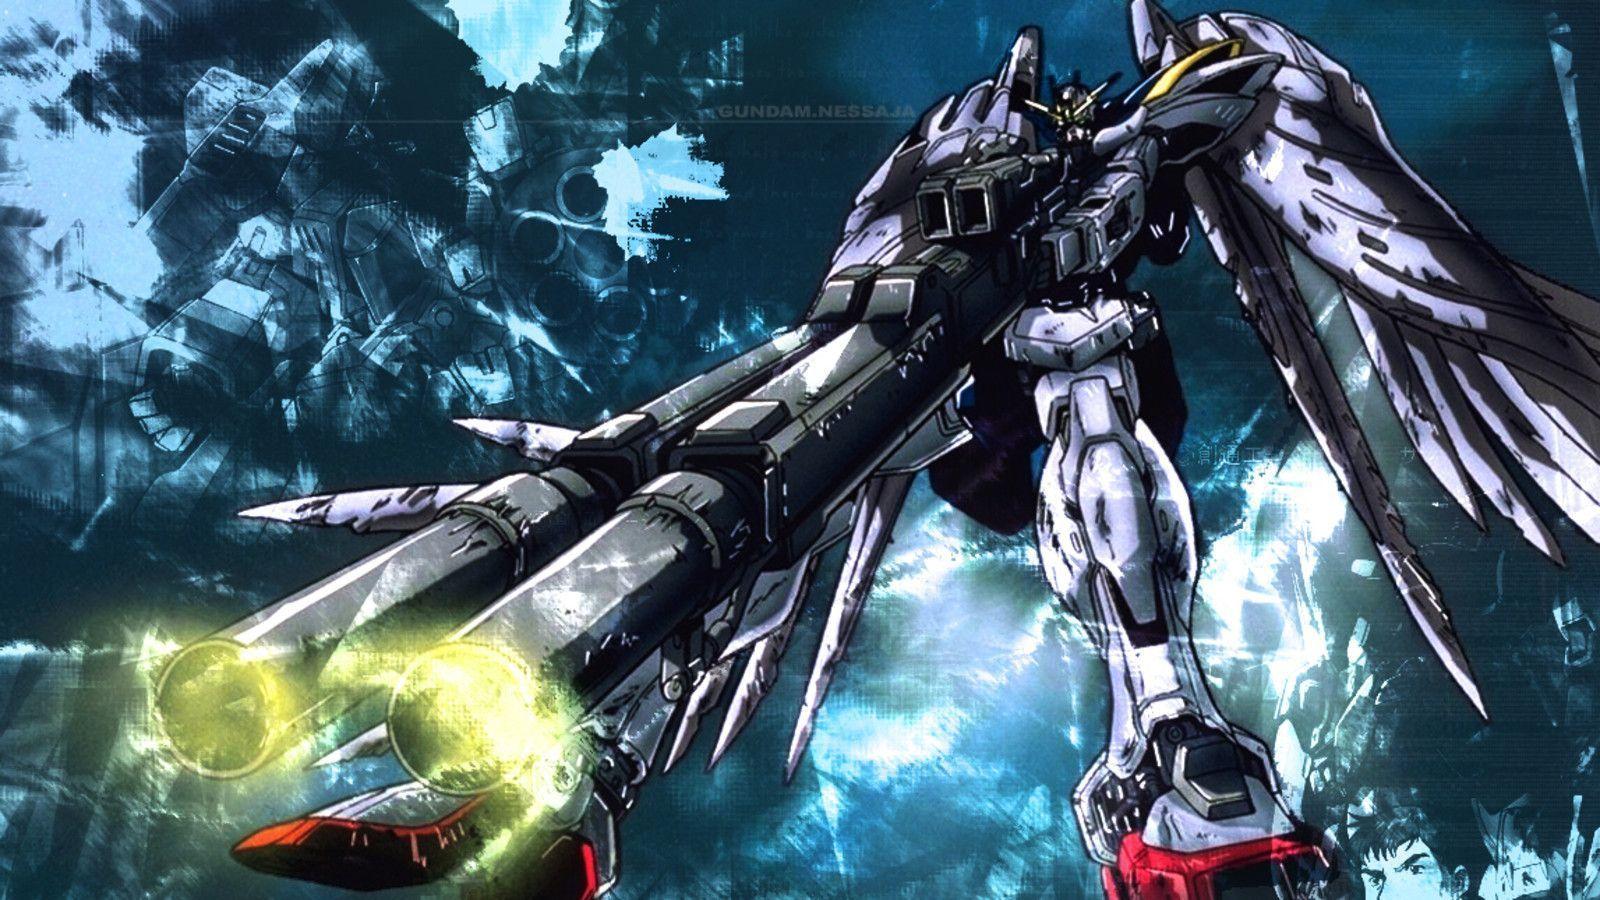 Wallpaper Gundam 00 Widescreen